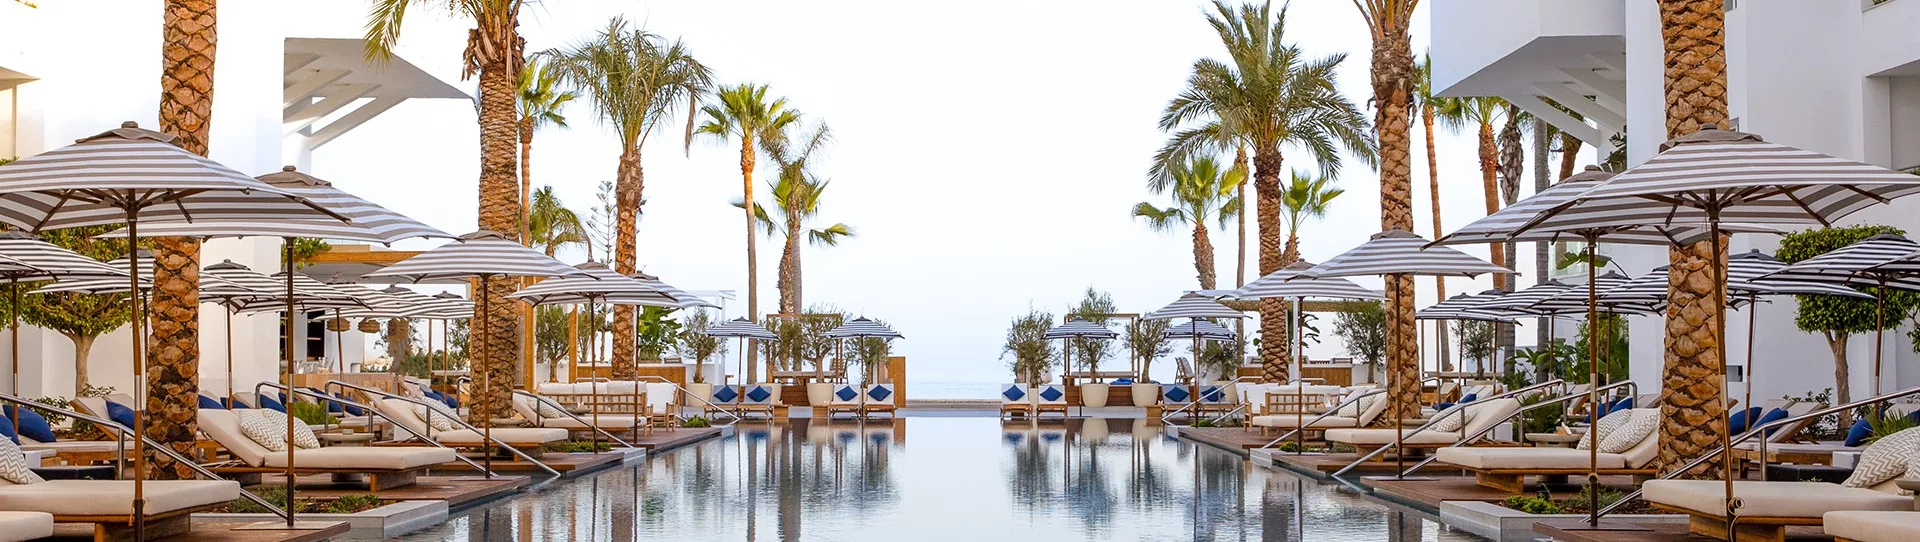 Spain golf holidays - METT Hotel & Beach Resort Marbella Estepona - Photo 1